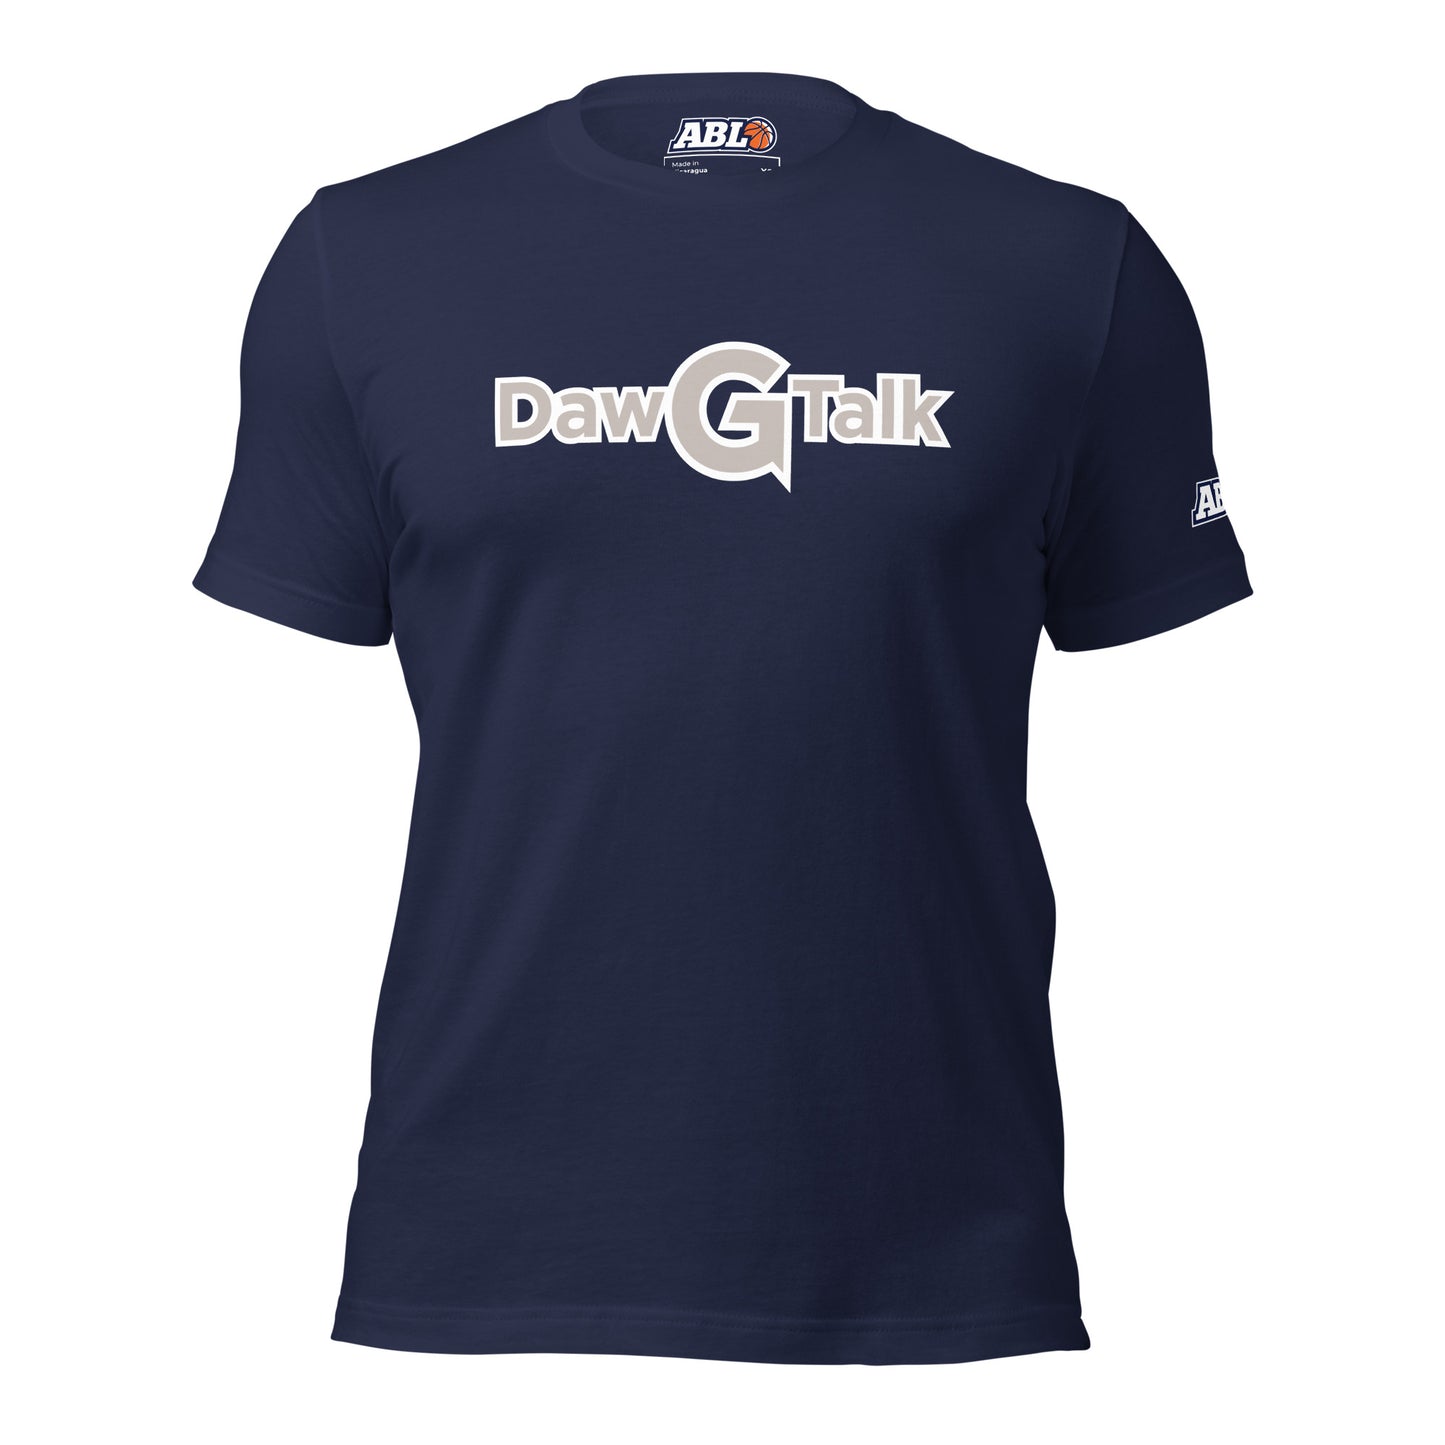 DAWGTALK Unisex t-shirt